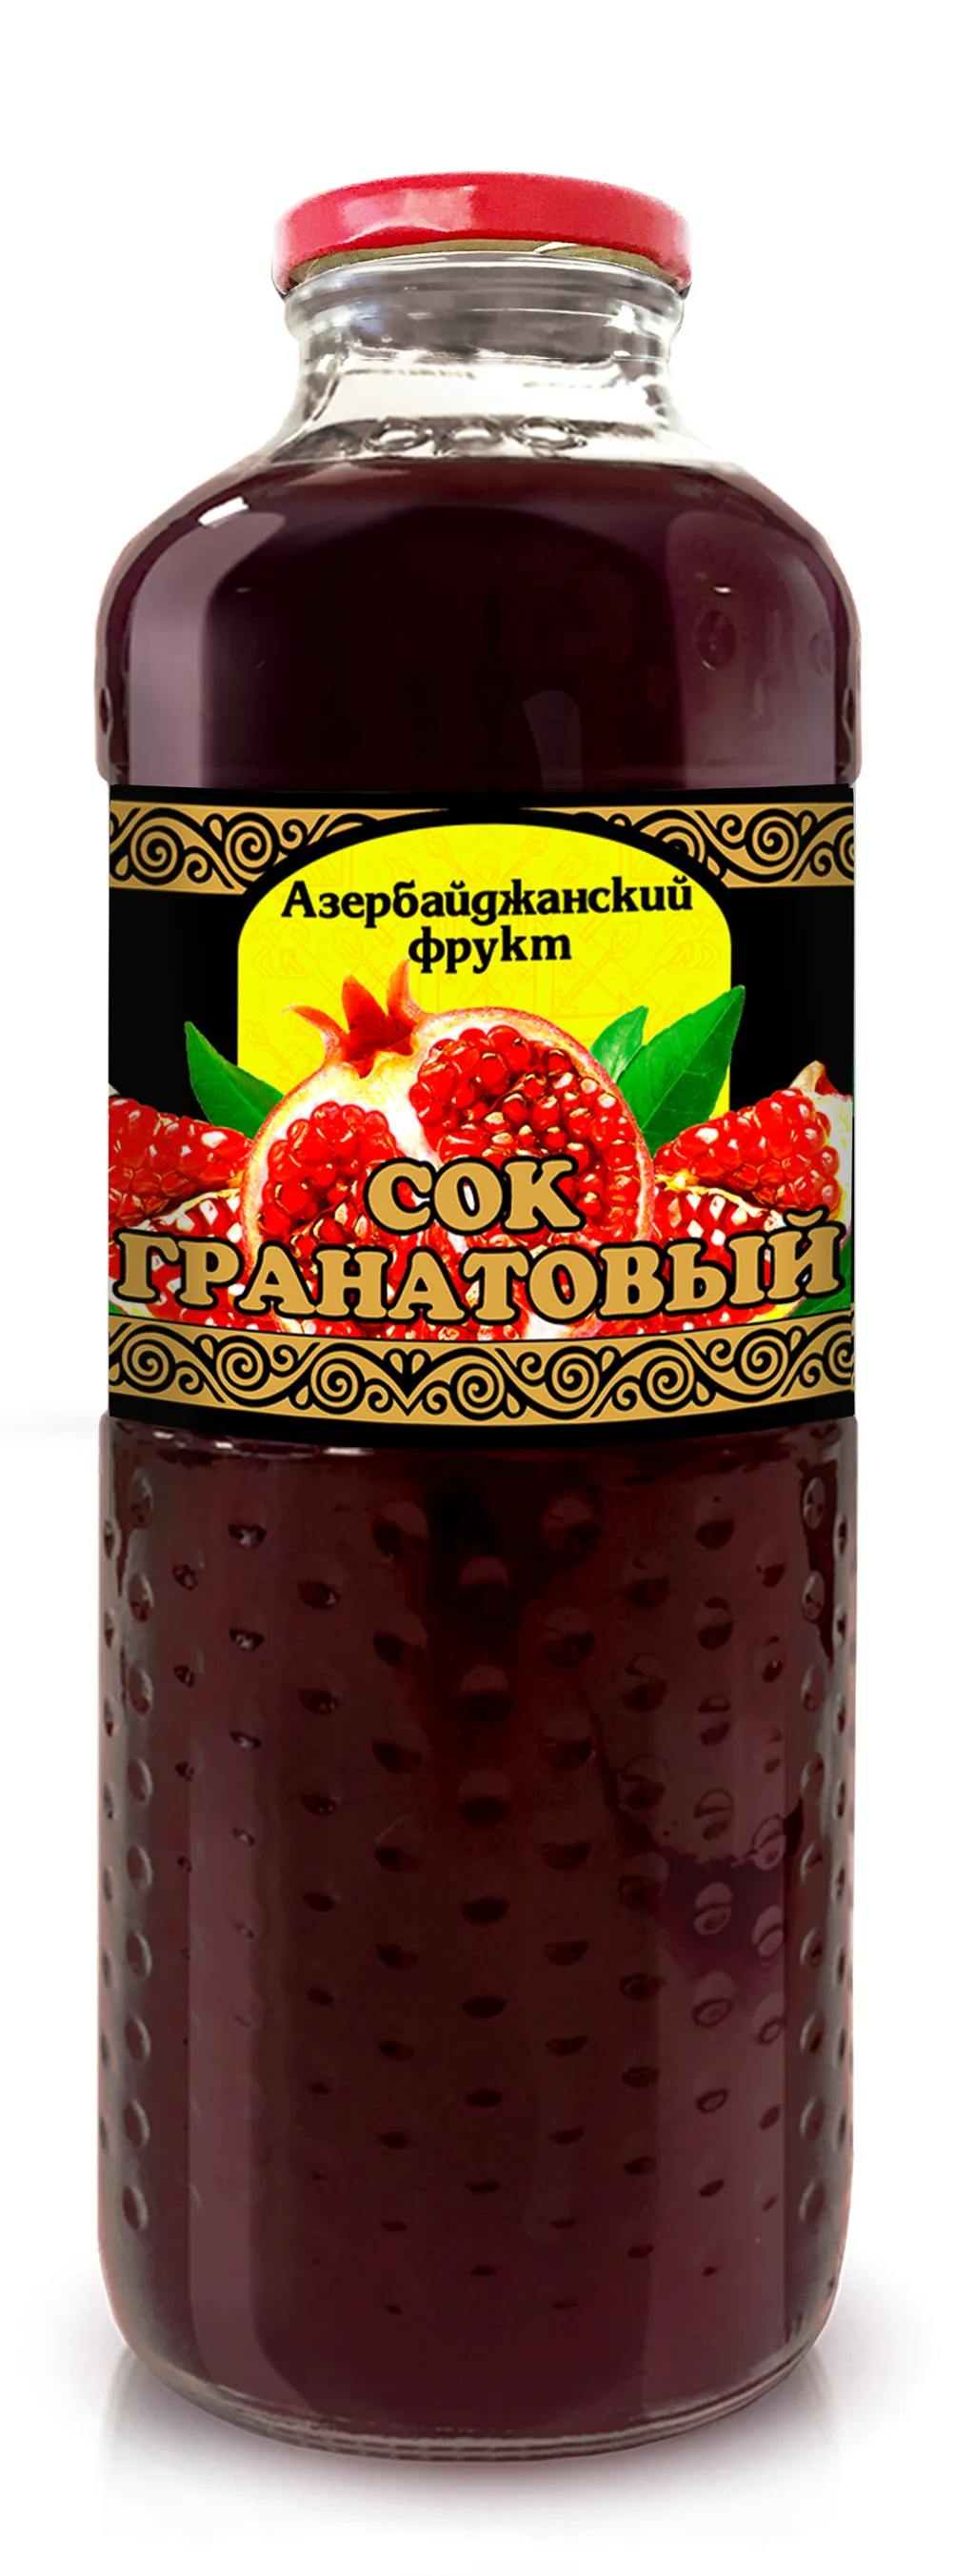 фотография продукта Сок гранатовый "Азербайджанский фрукт"